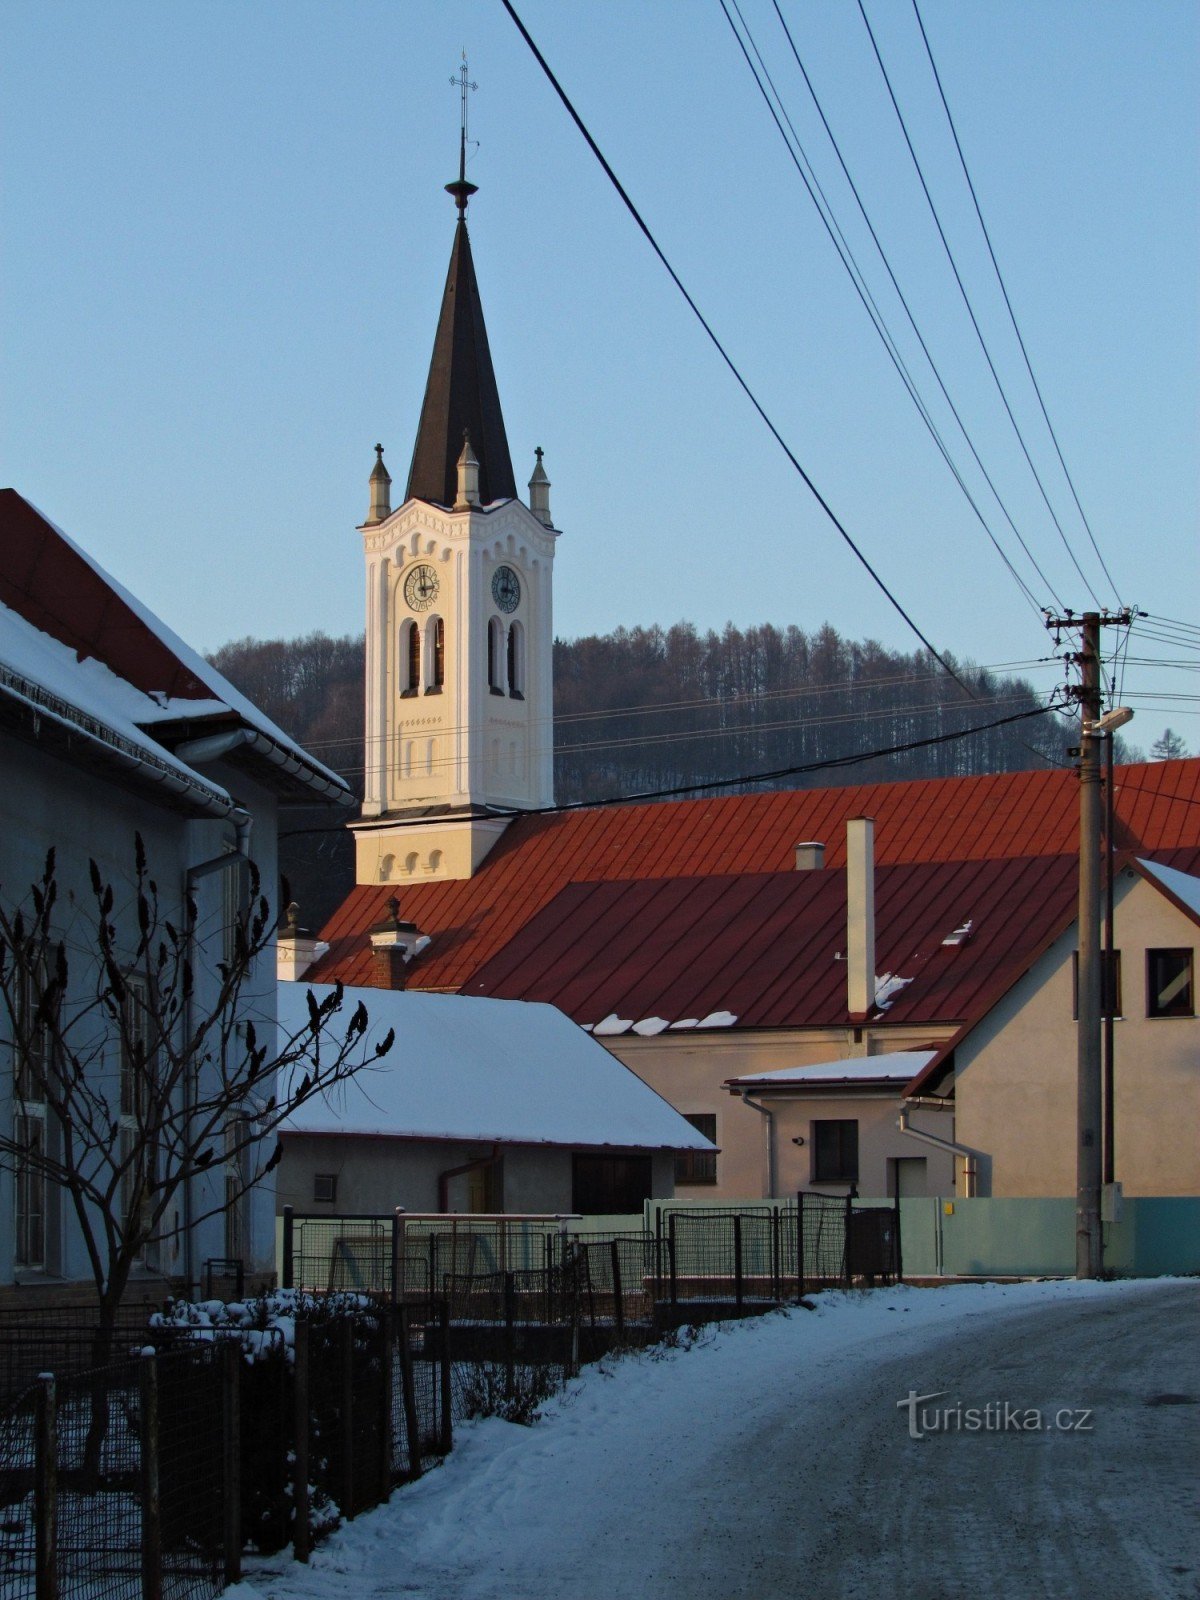 Jasenná - nhà thờ truyền giáo